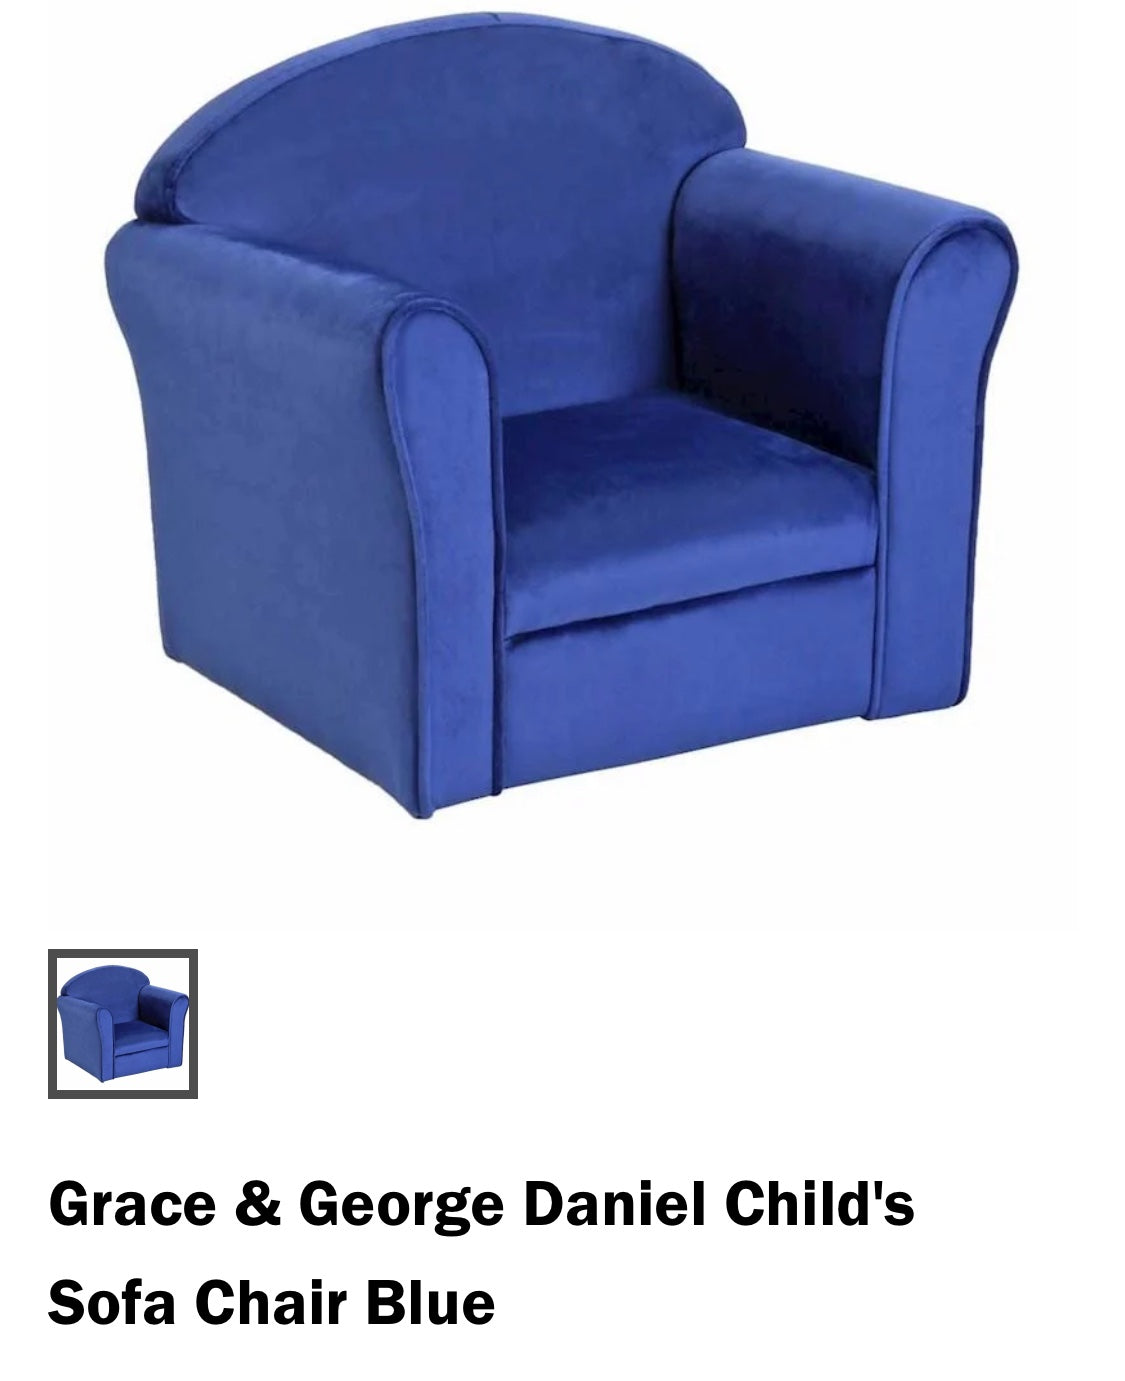 George Daniel Child's Sofa Chair Blue